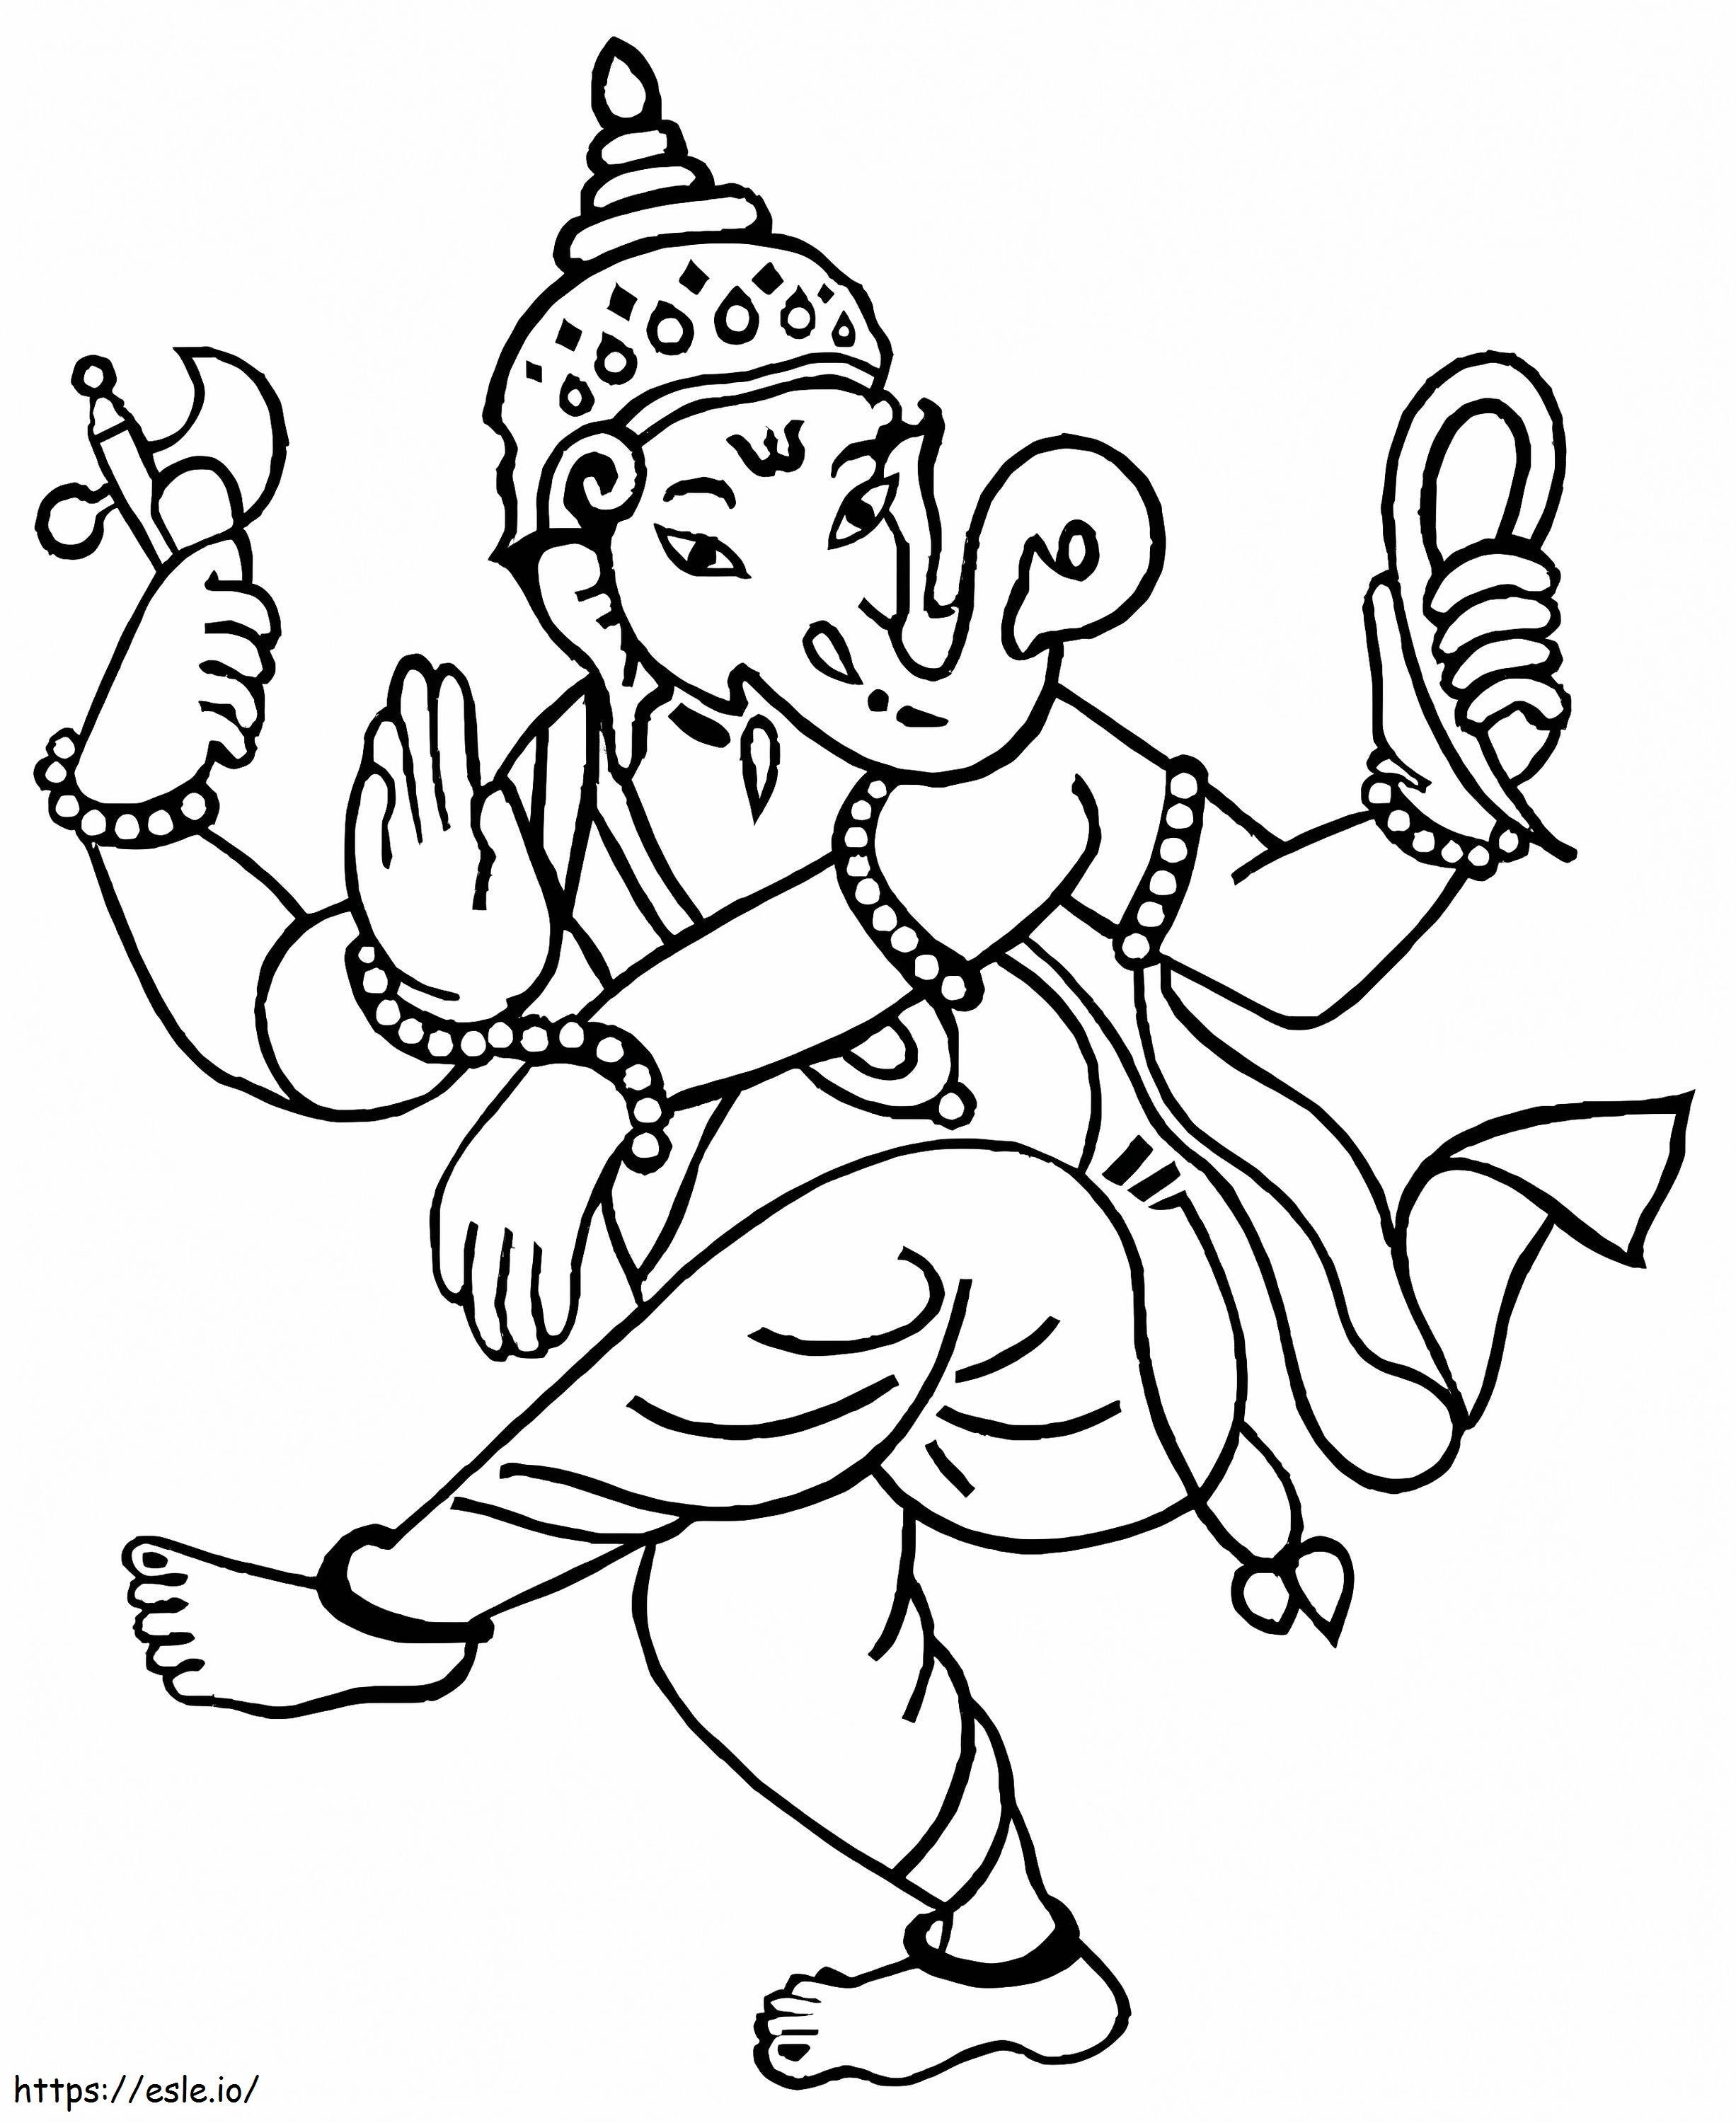 Lord Ganesha 3 coloring page